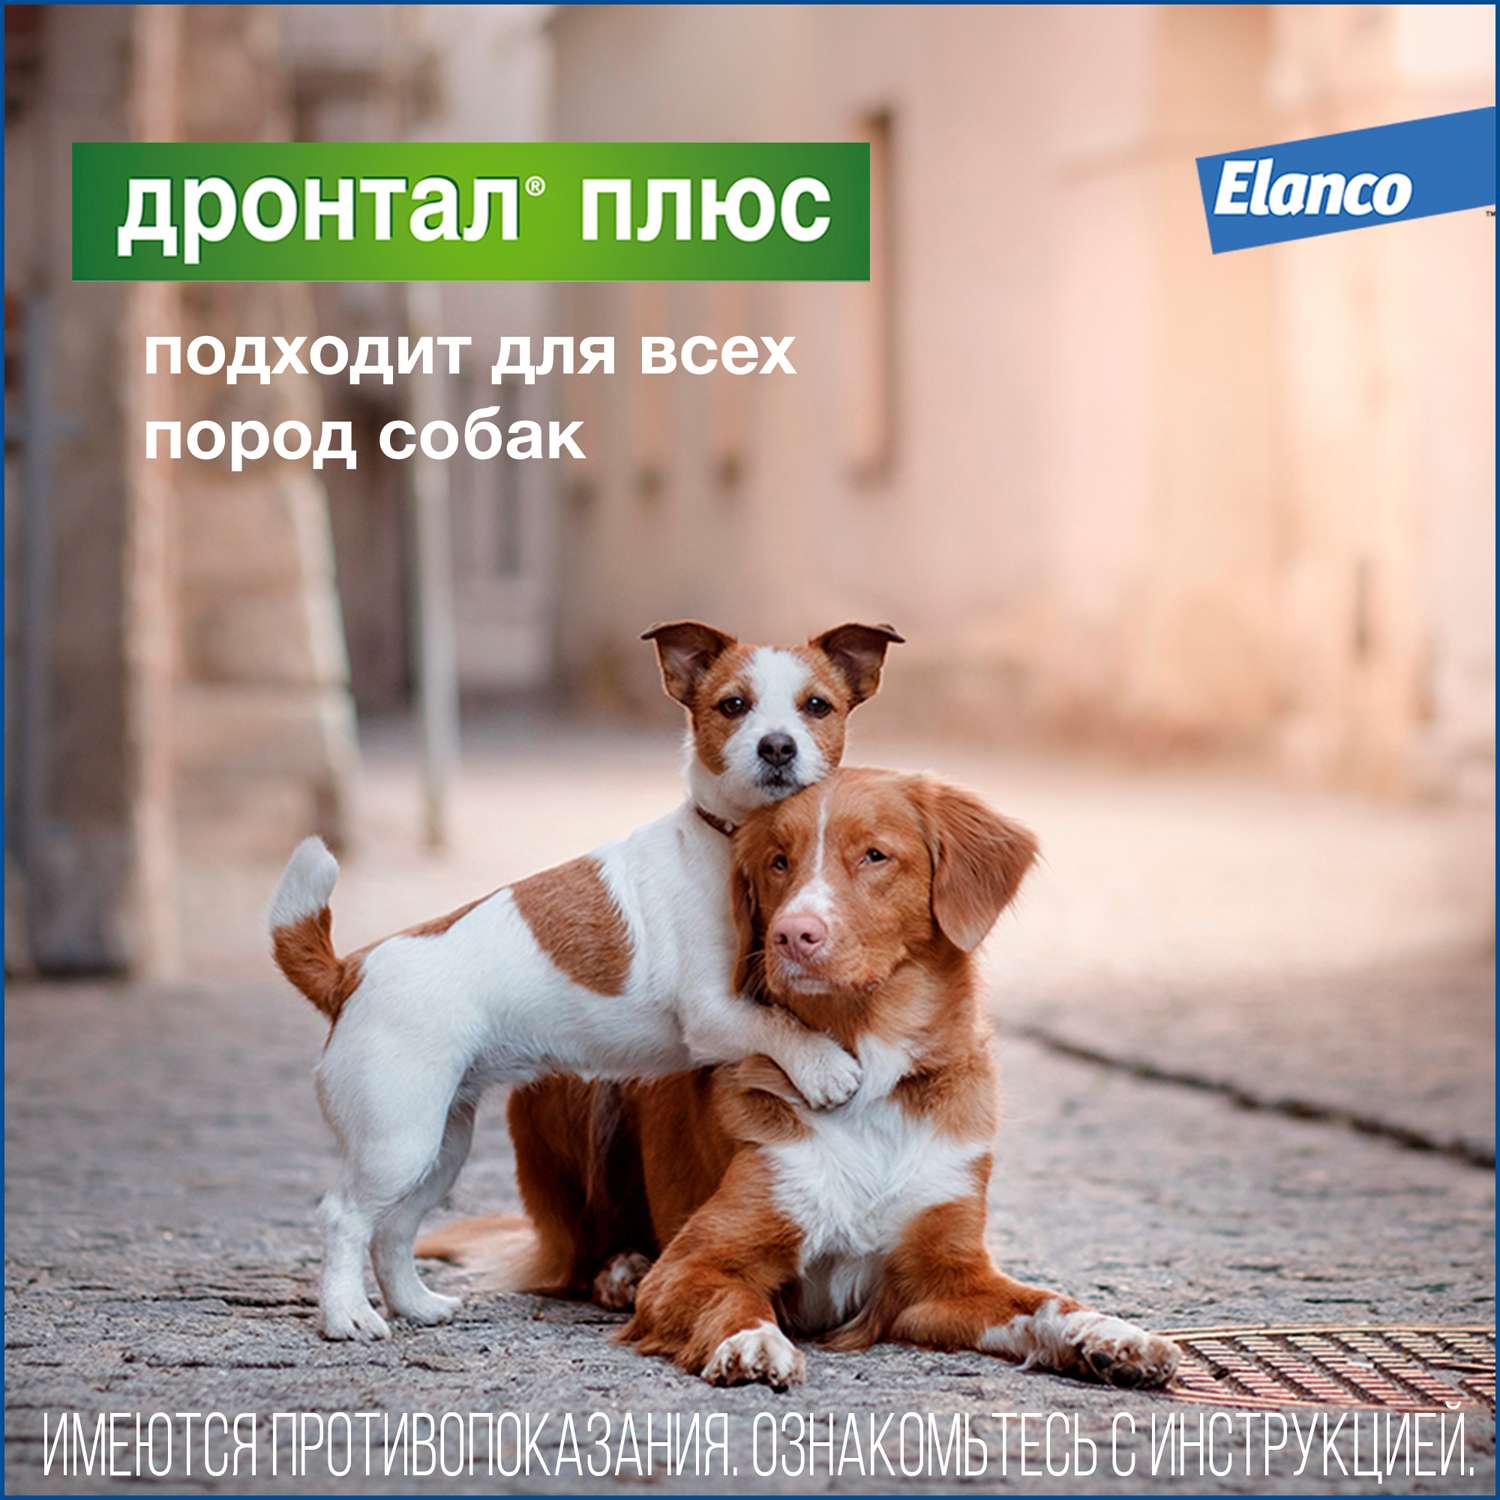 Таблетки для собак Elanco Дронтал плюс против глистов XL 2таблетки - фото 5